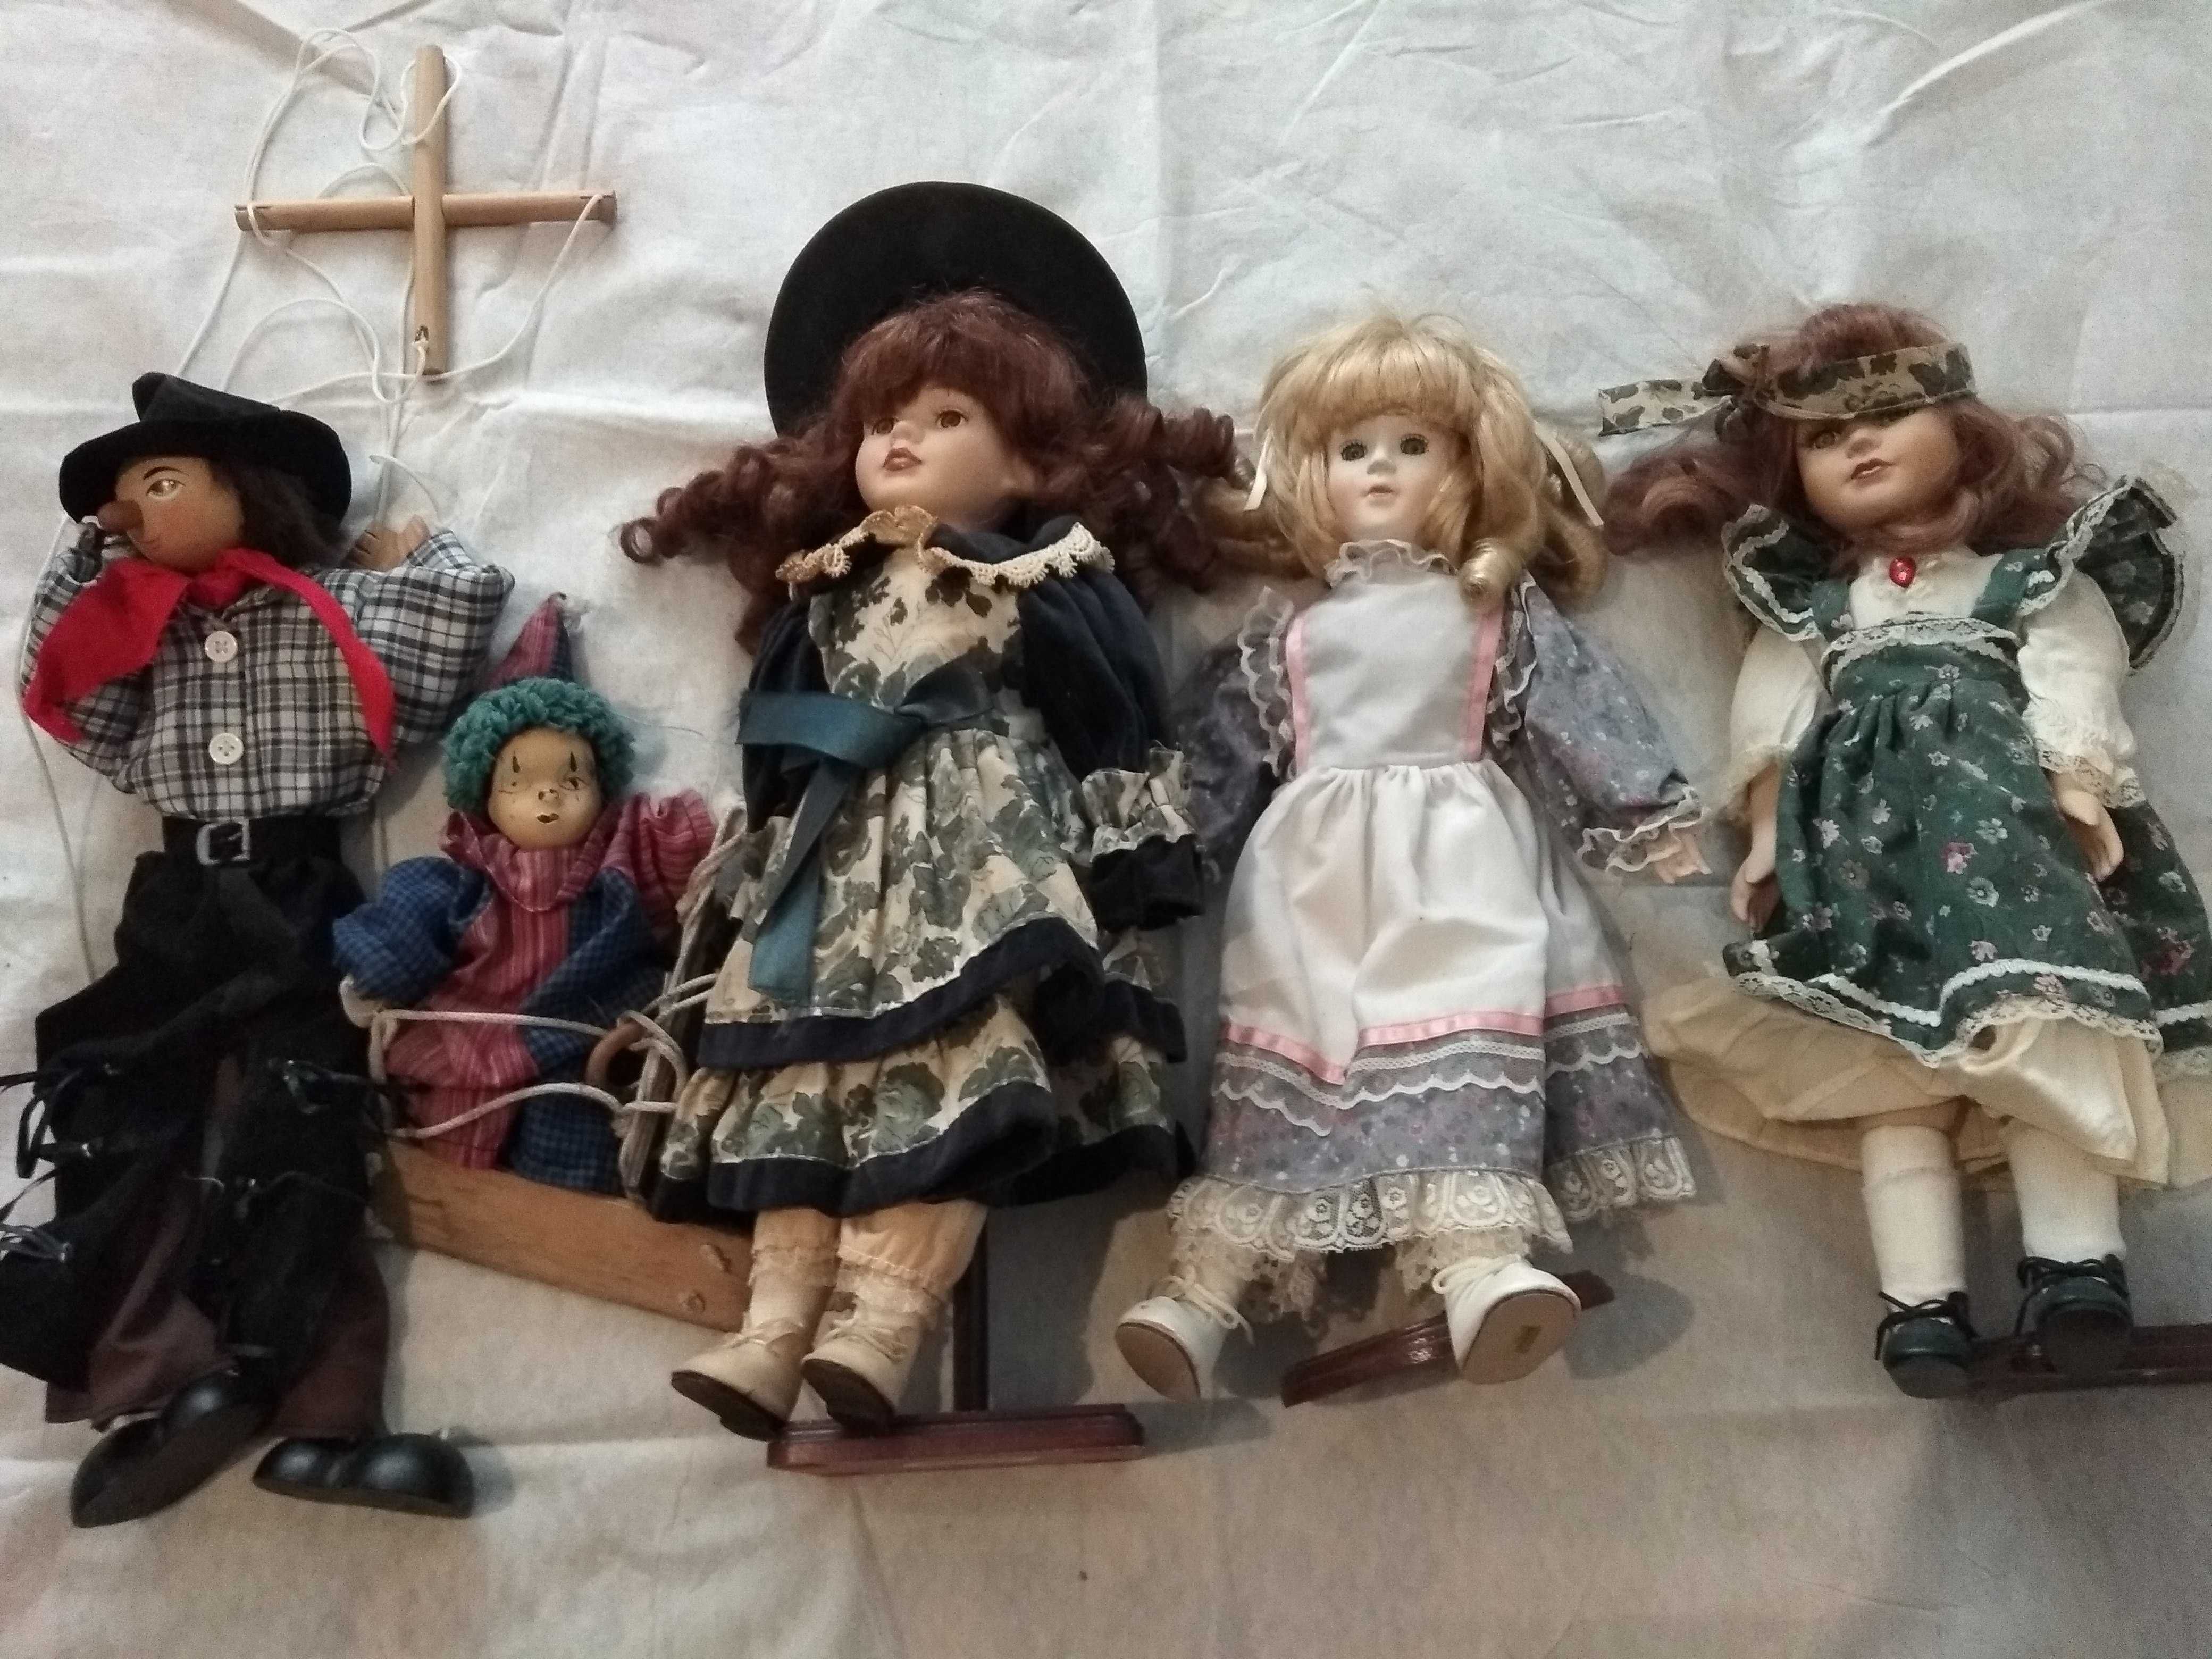 Lote de Bonecas Antigas + Boneco Marionete coleção